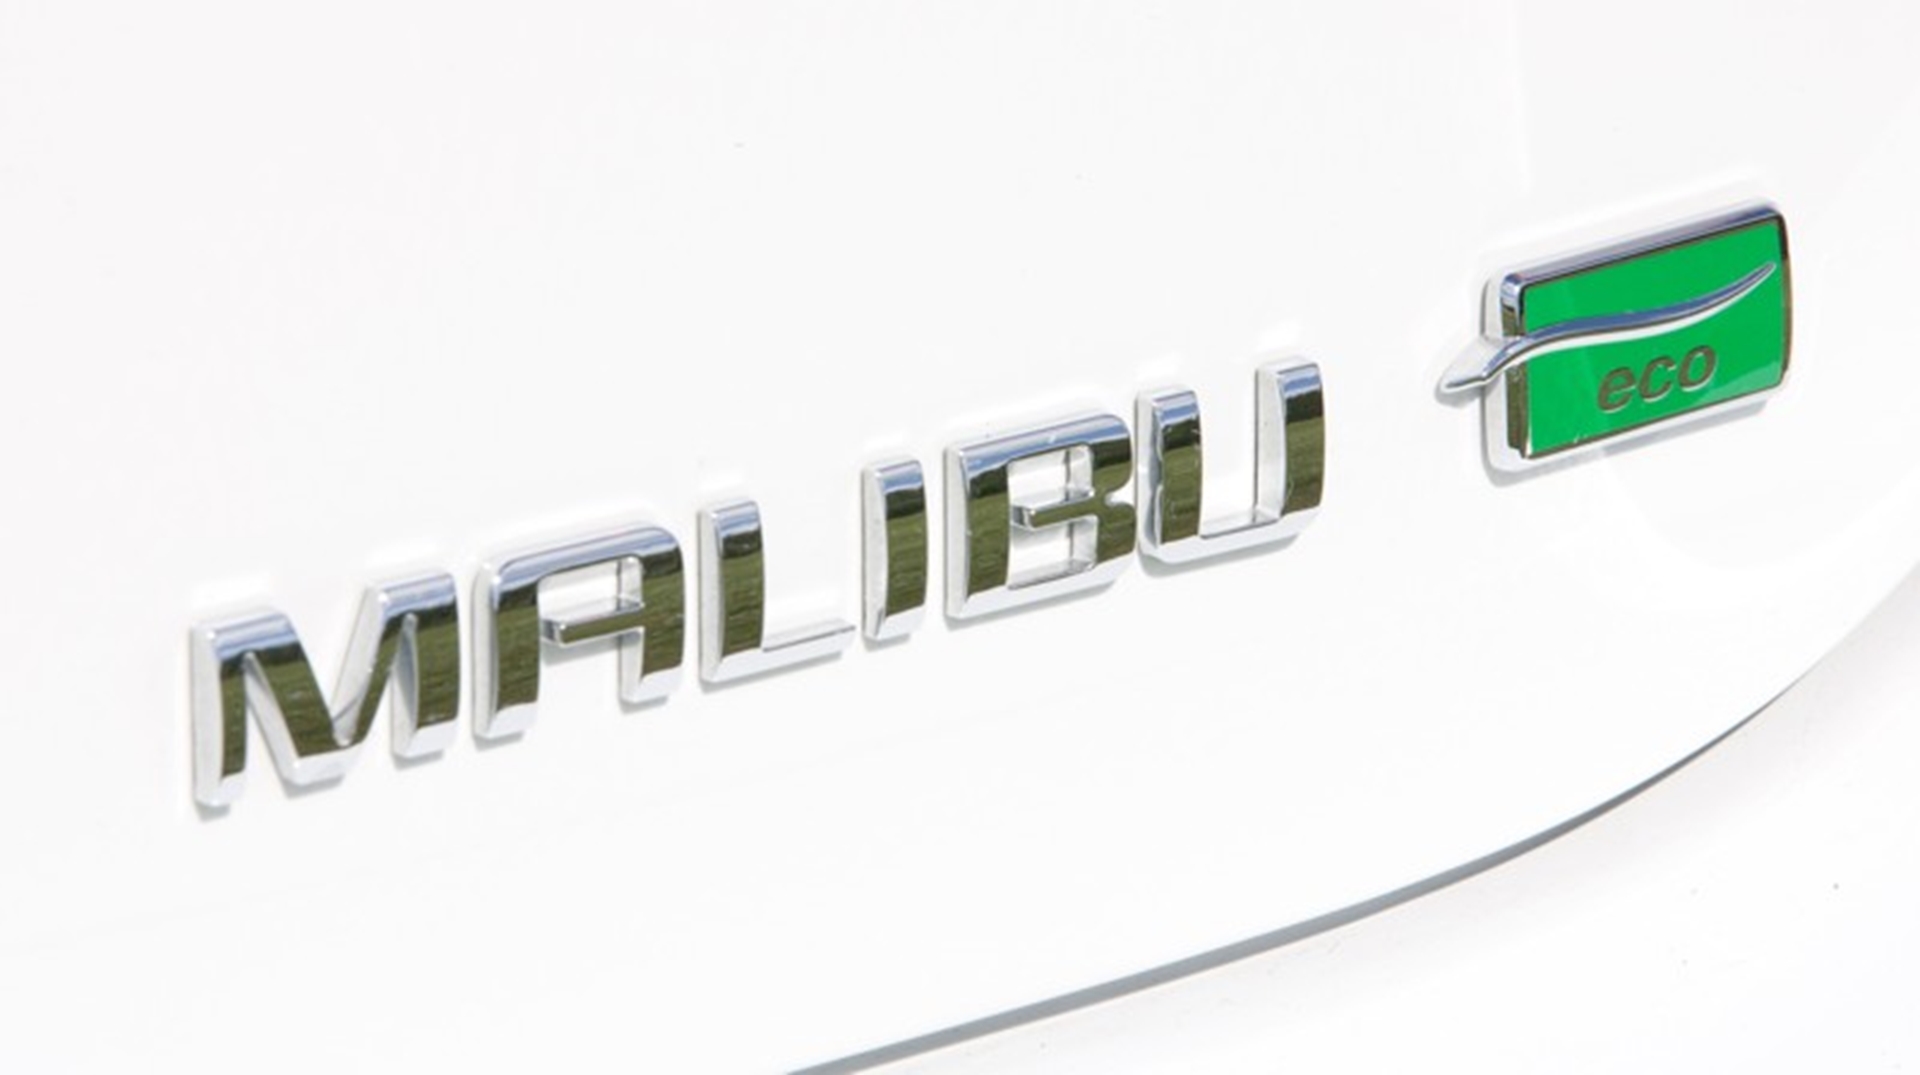 Chevrolet Malibu ECO logo